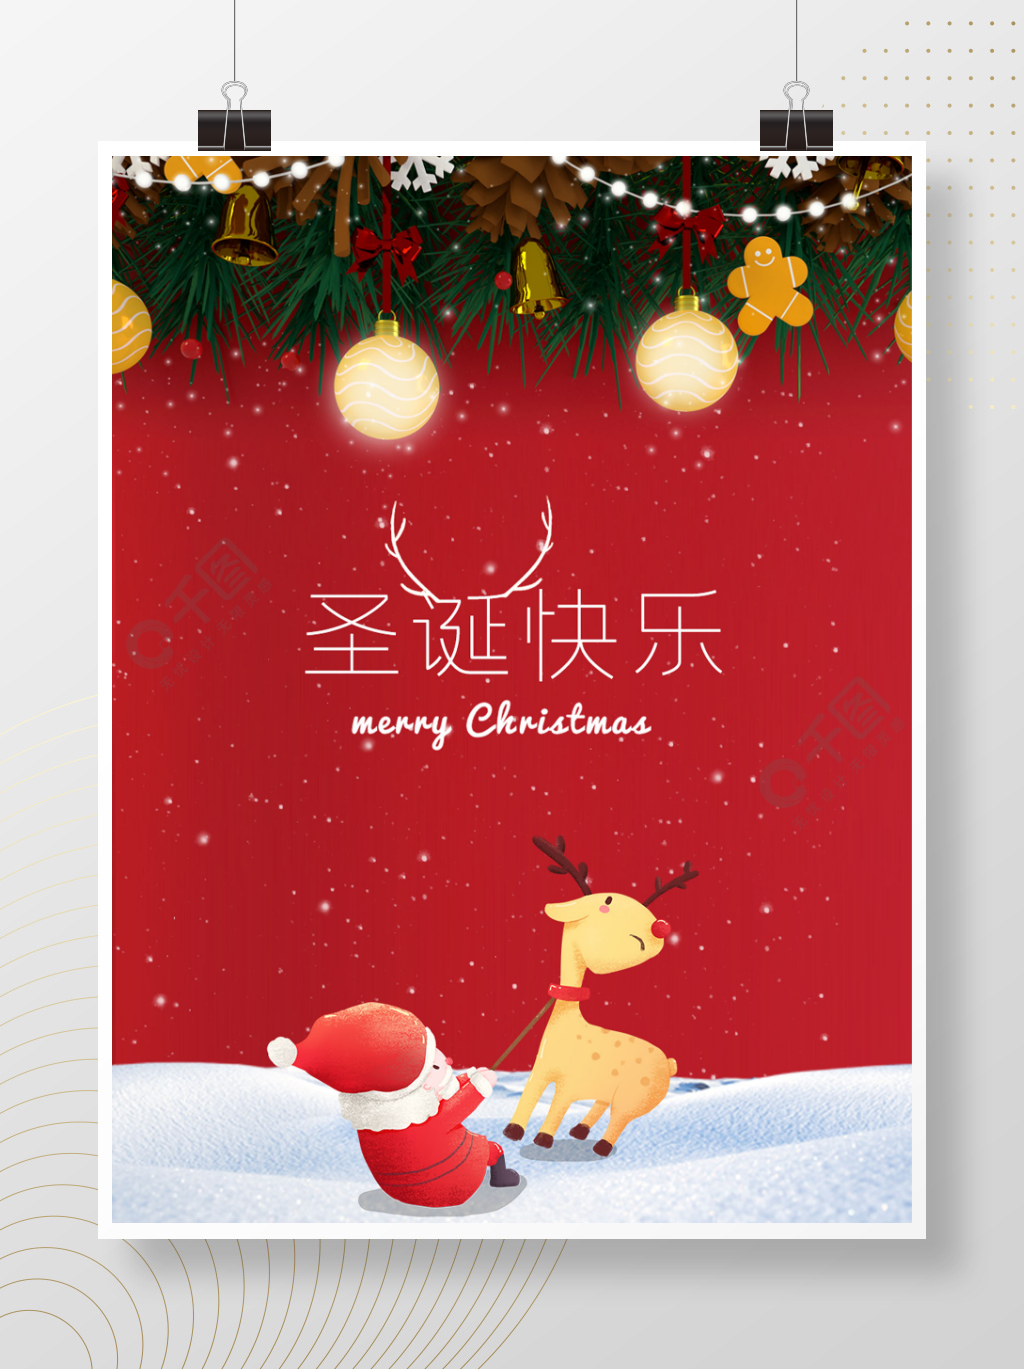 圣诞节快乐圣诞老人下雪海报素材2020年1年前发布